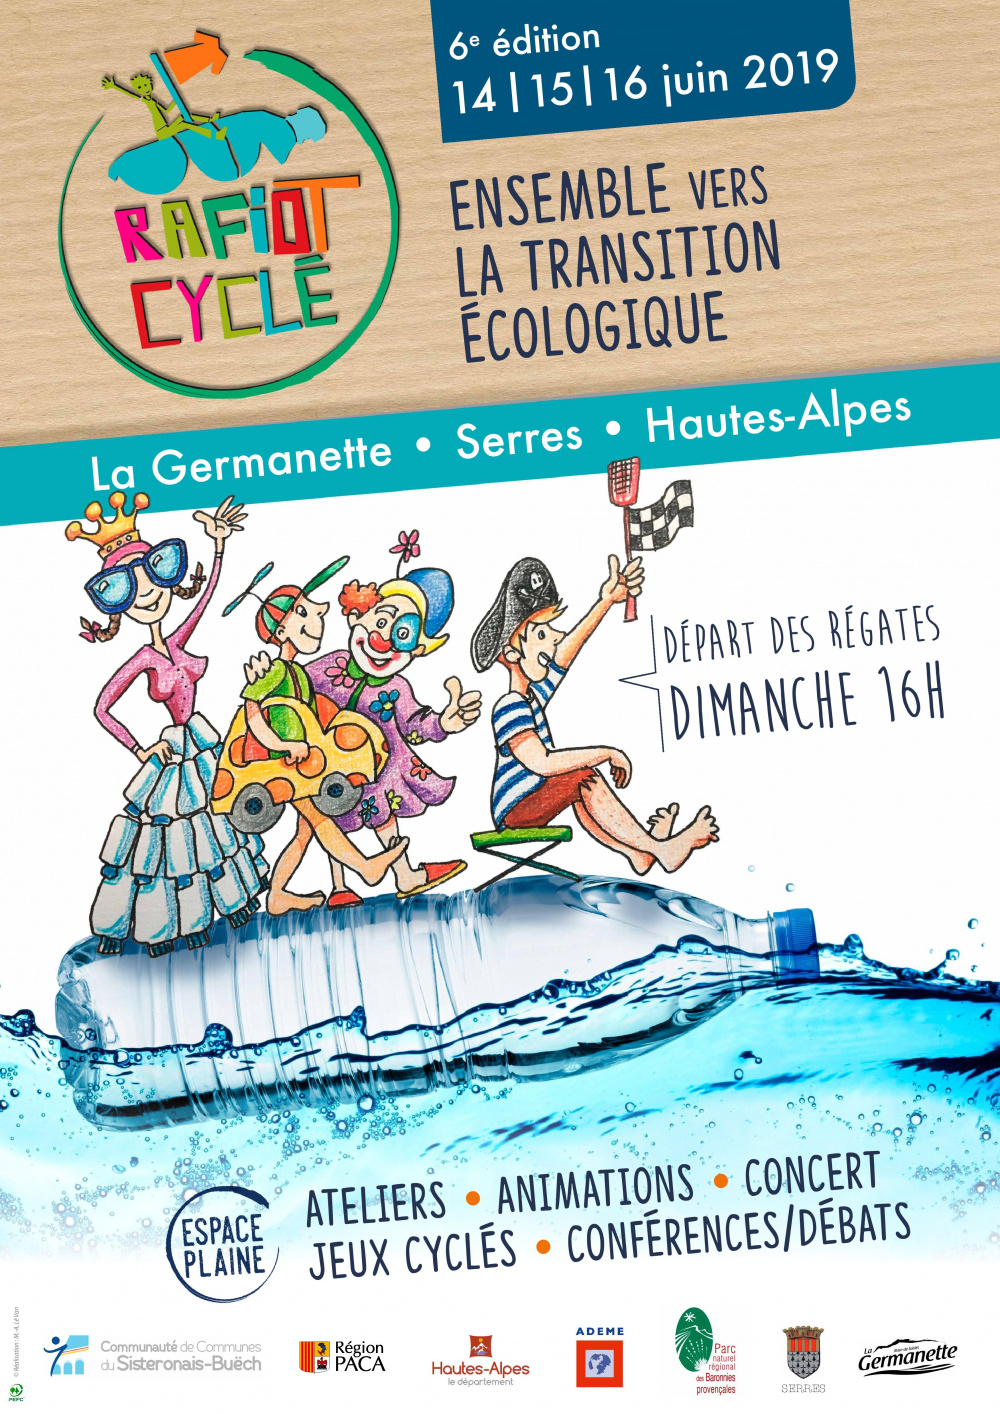 Affiche festival Rafiot cyclé